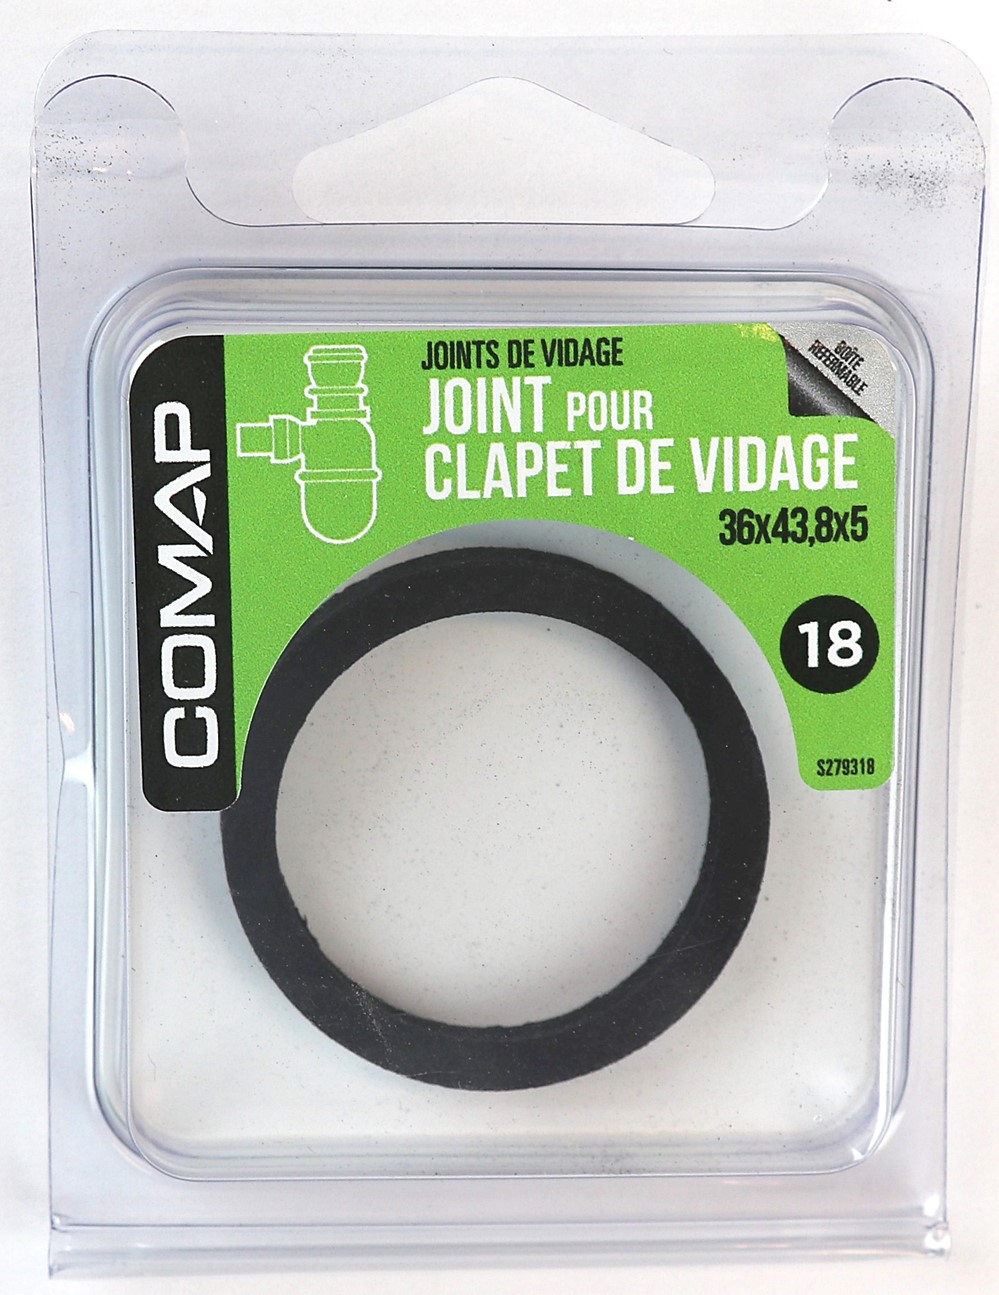 Joint clapet vidage 36x43.8x5 - COMAP